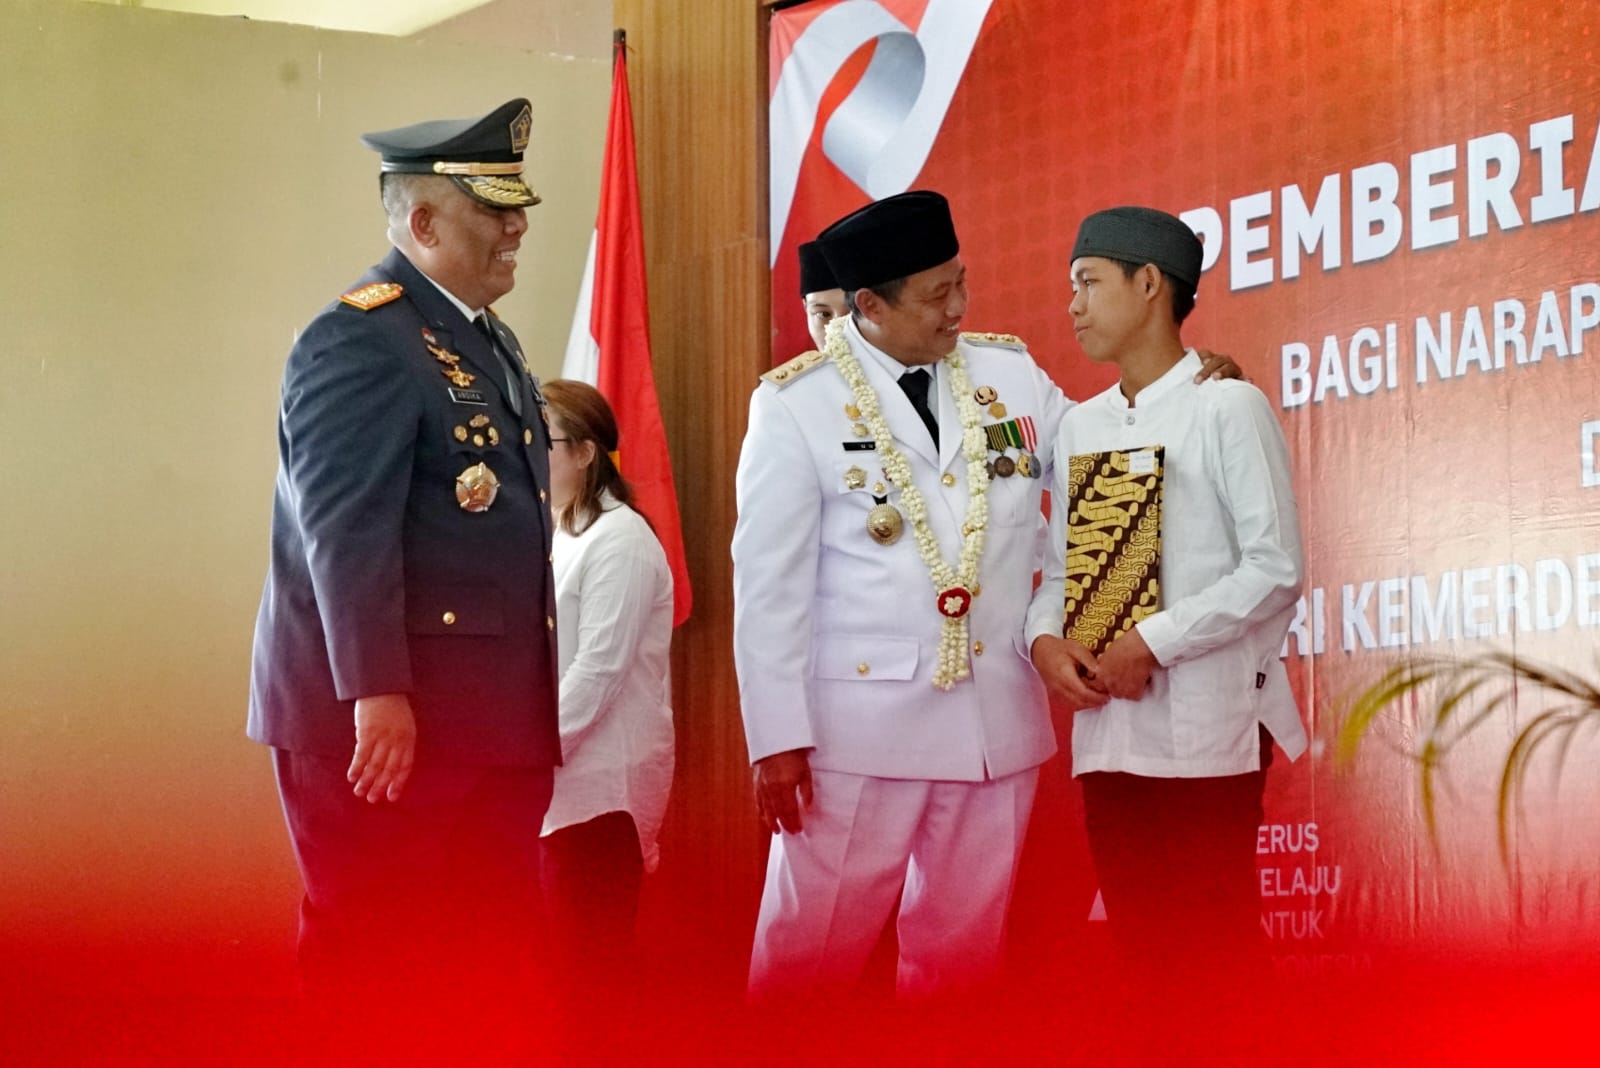 Uu Ruzhanul Sampaikan SK Remisi kepada 17.016 Binaan Lapas di Jabar, Tepat di HUT Kemerdekaan Indonesia